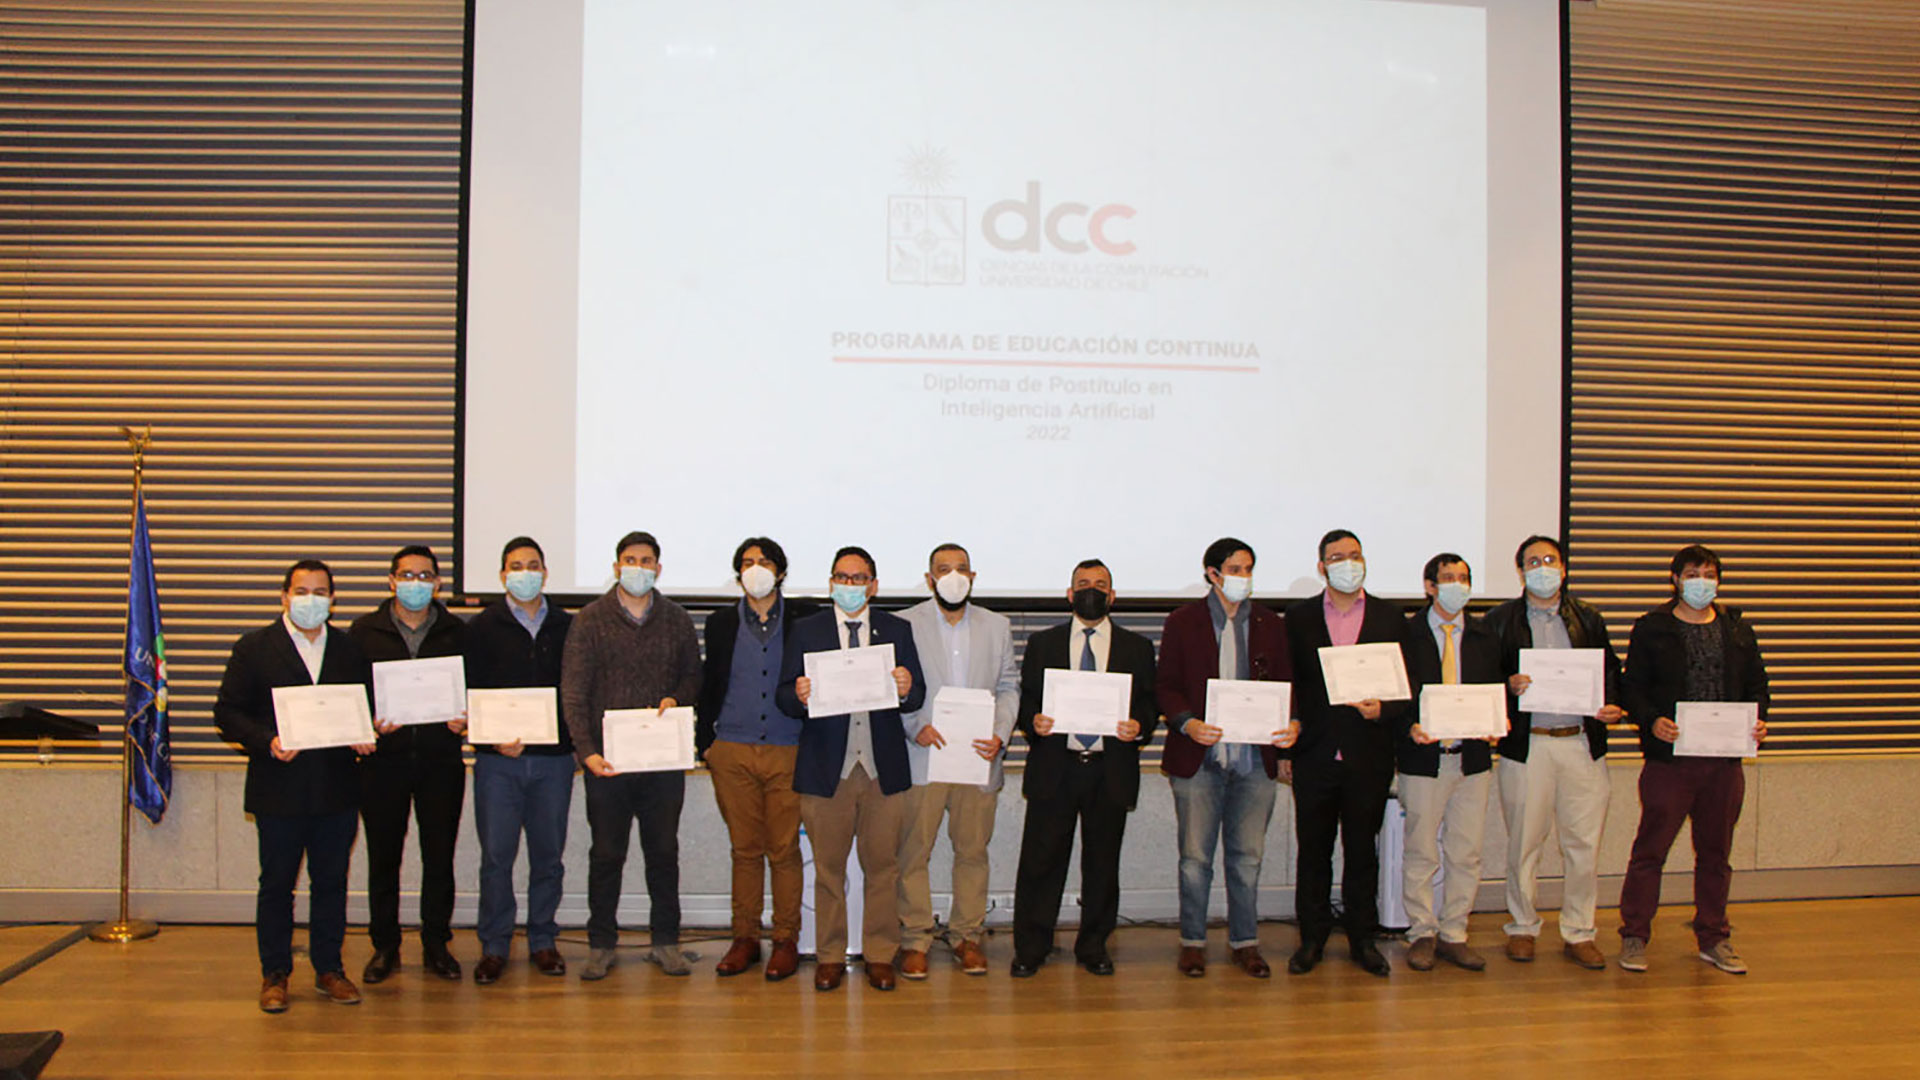 Programa de Educación Continua del DCC graduó a profesionales que cursaron el Diploma de Postítulo en Inteligencia Artificial